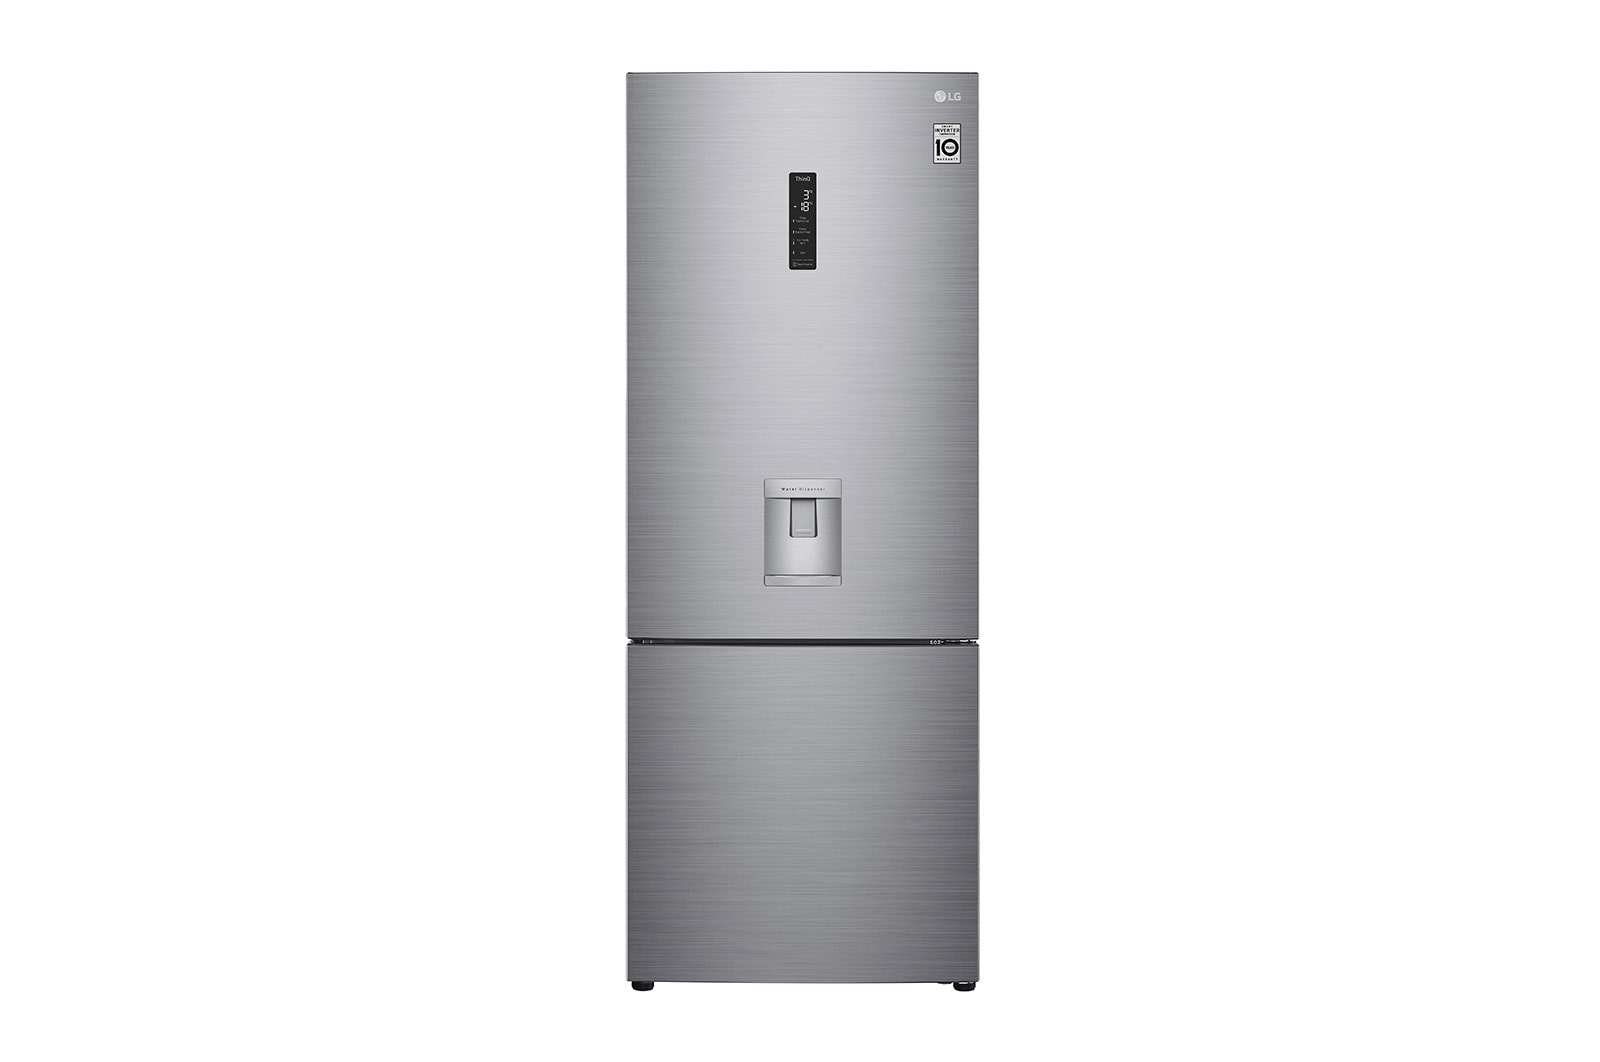  Mini refrigerador sin congelador, blanco de 1.7 pies cúbicos. :  Hogar y Cocina